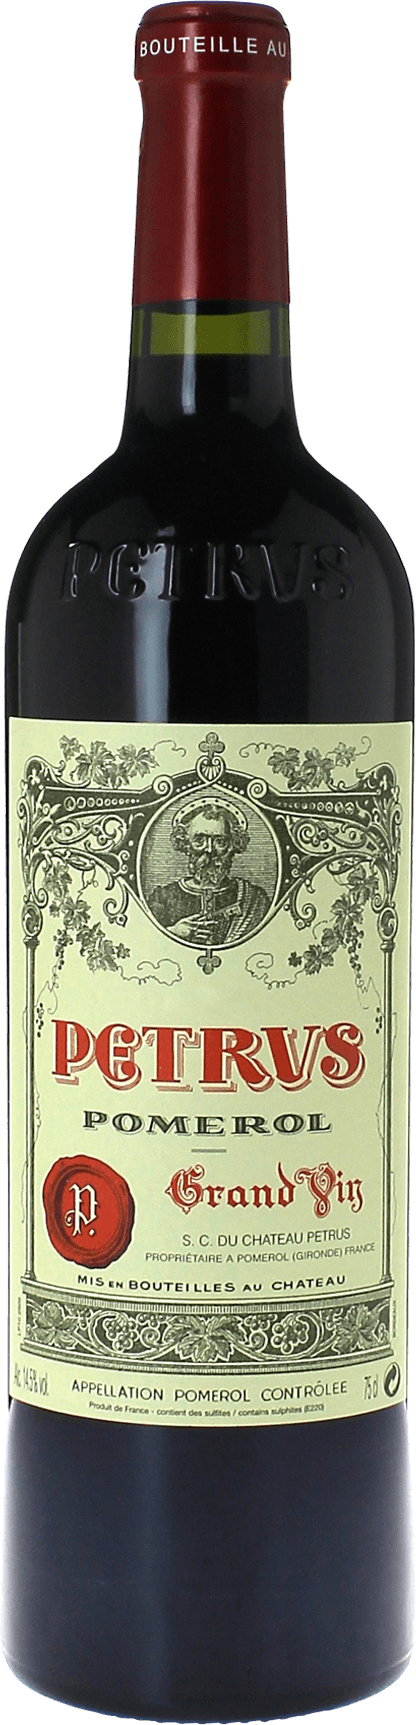 Petrus 1999  Pomerol, Bordeaux rouge